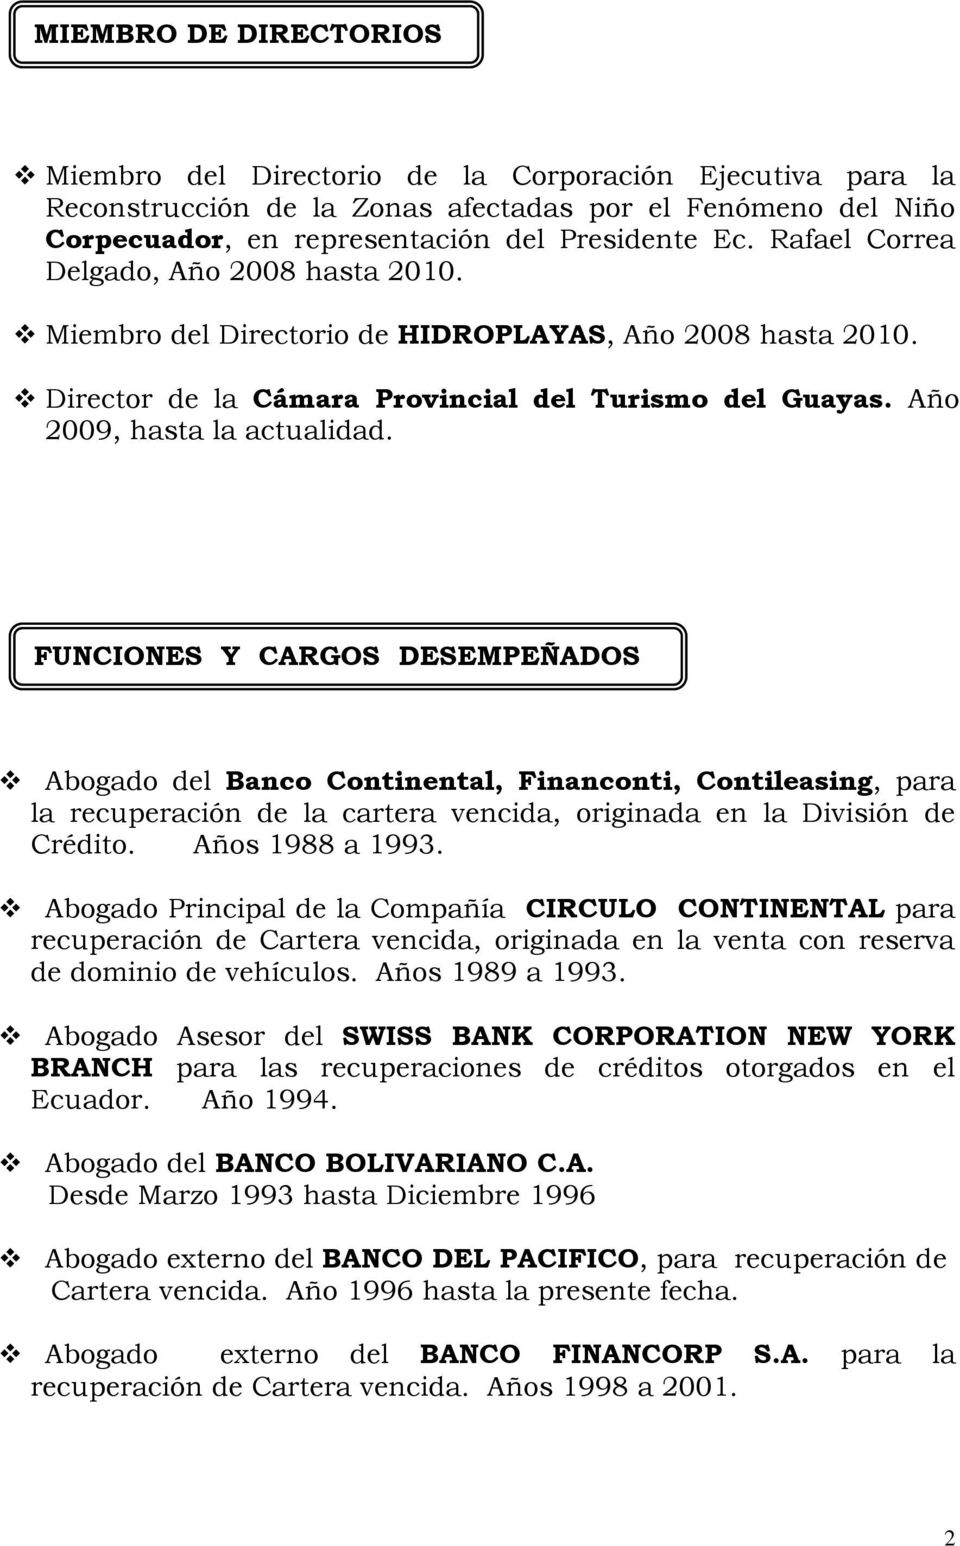 FUNCIONES Y CARGOS DESEMPEÑADOS Abogado del Banco Continental, Financonti, Contileasing, para la recuperación de la cartera vencida, originada en la División de Crédito. Años 1988 a 1993.